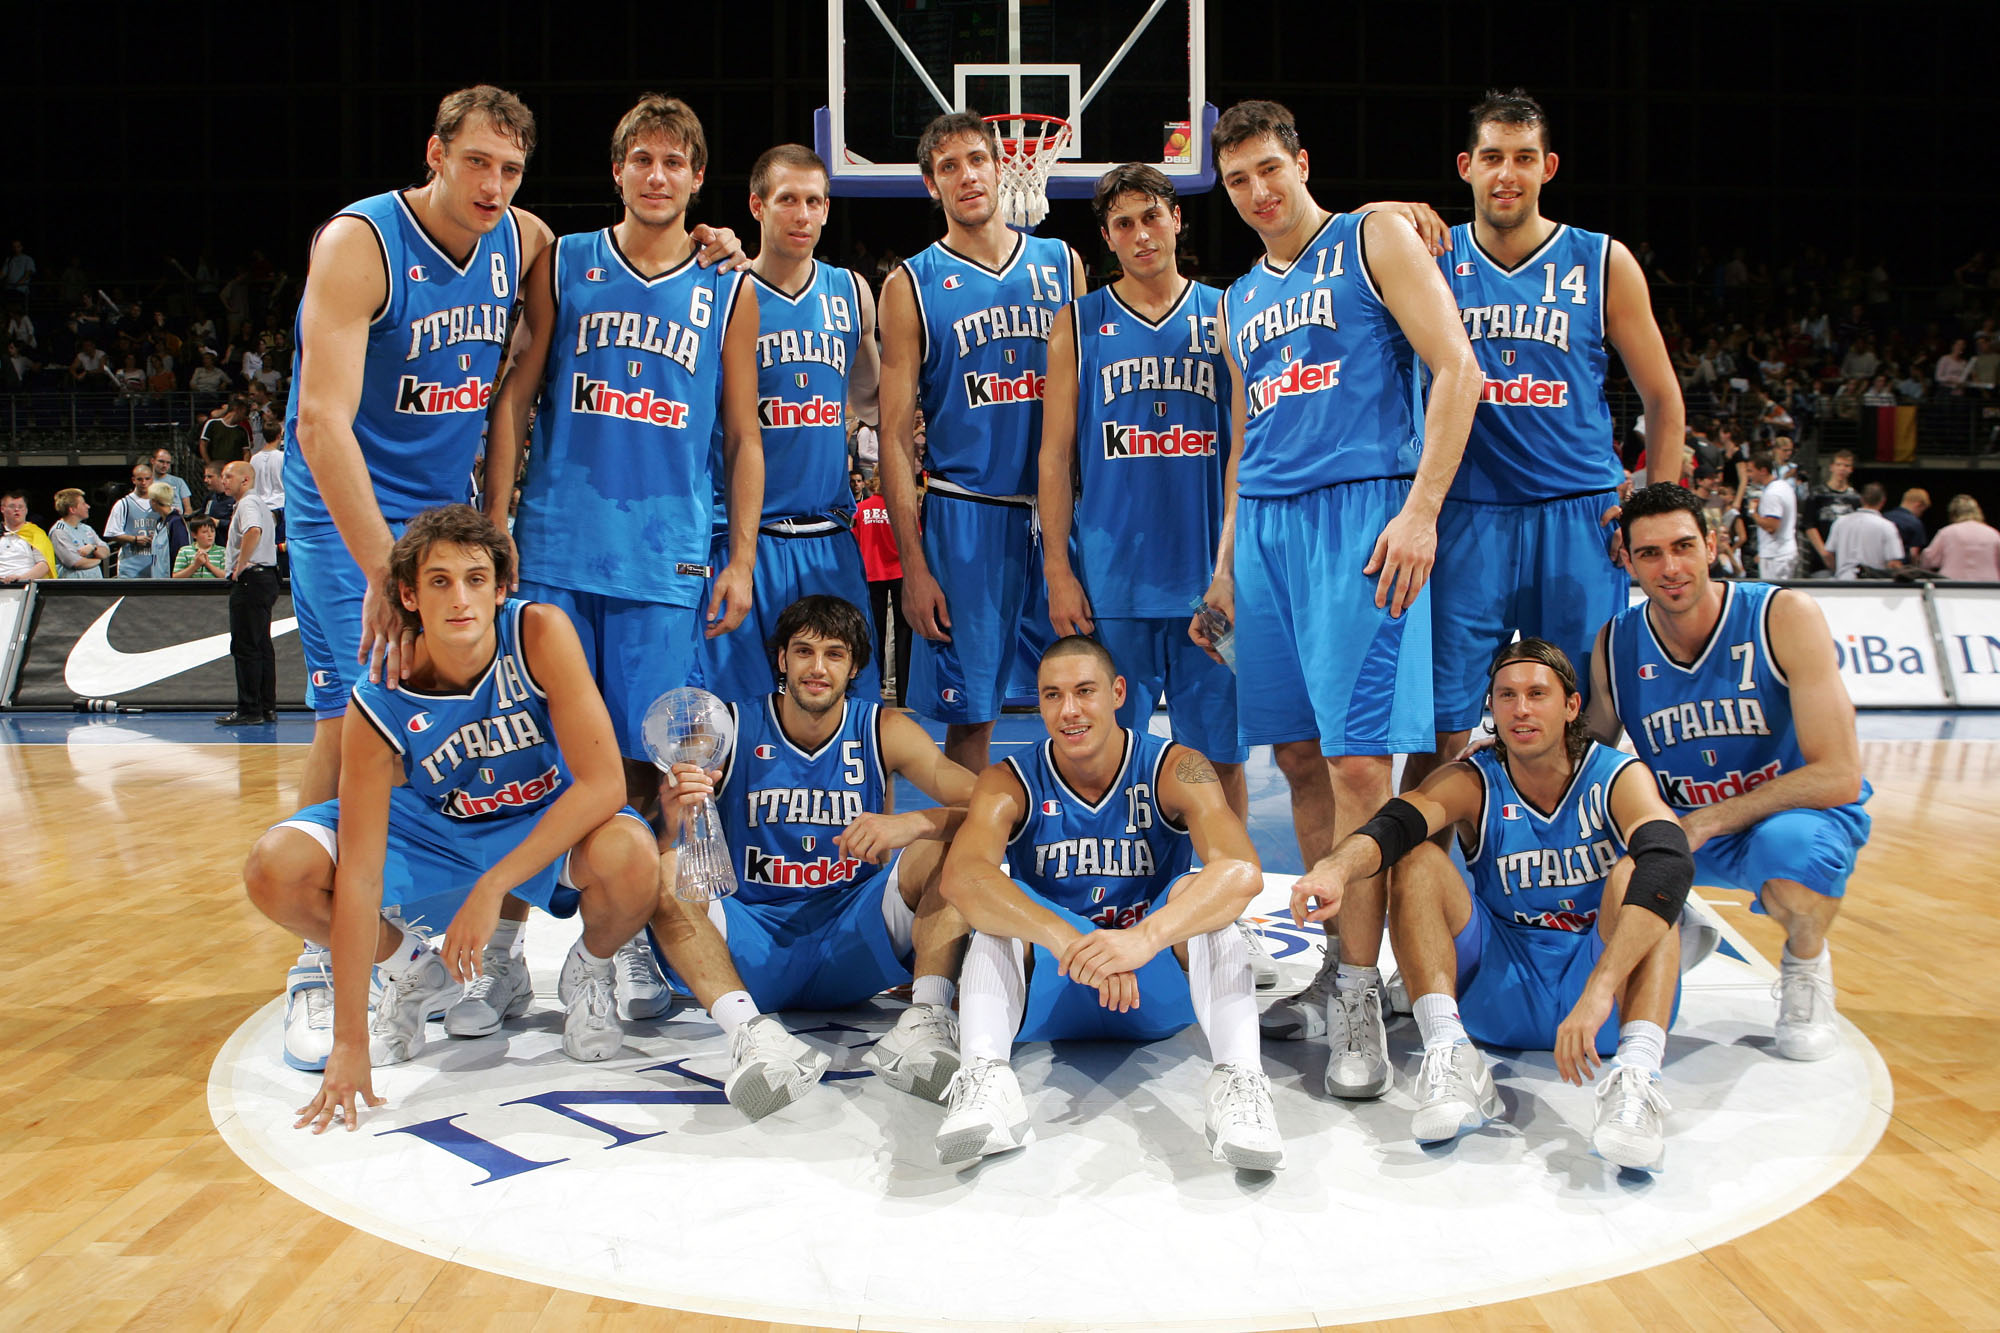 義大利國家男子籃球隊全家福